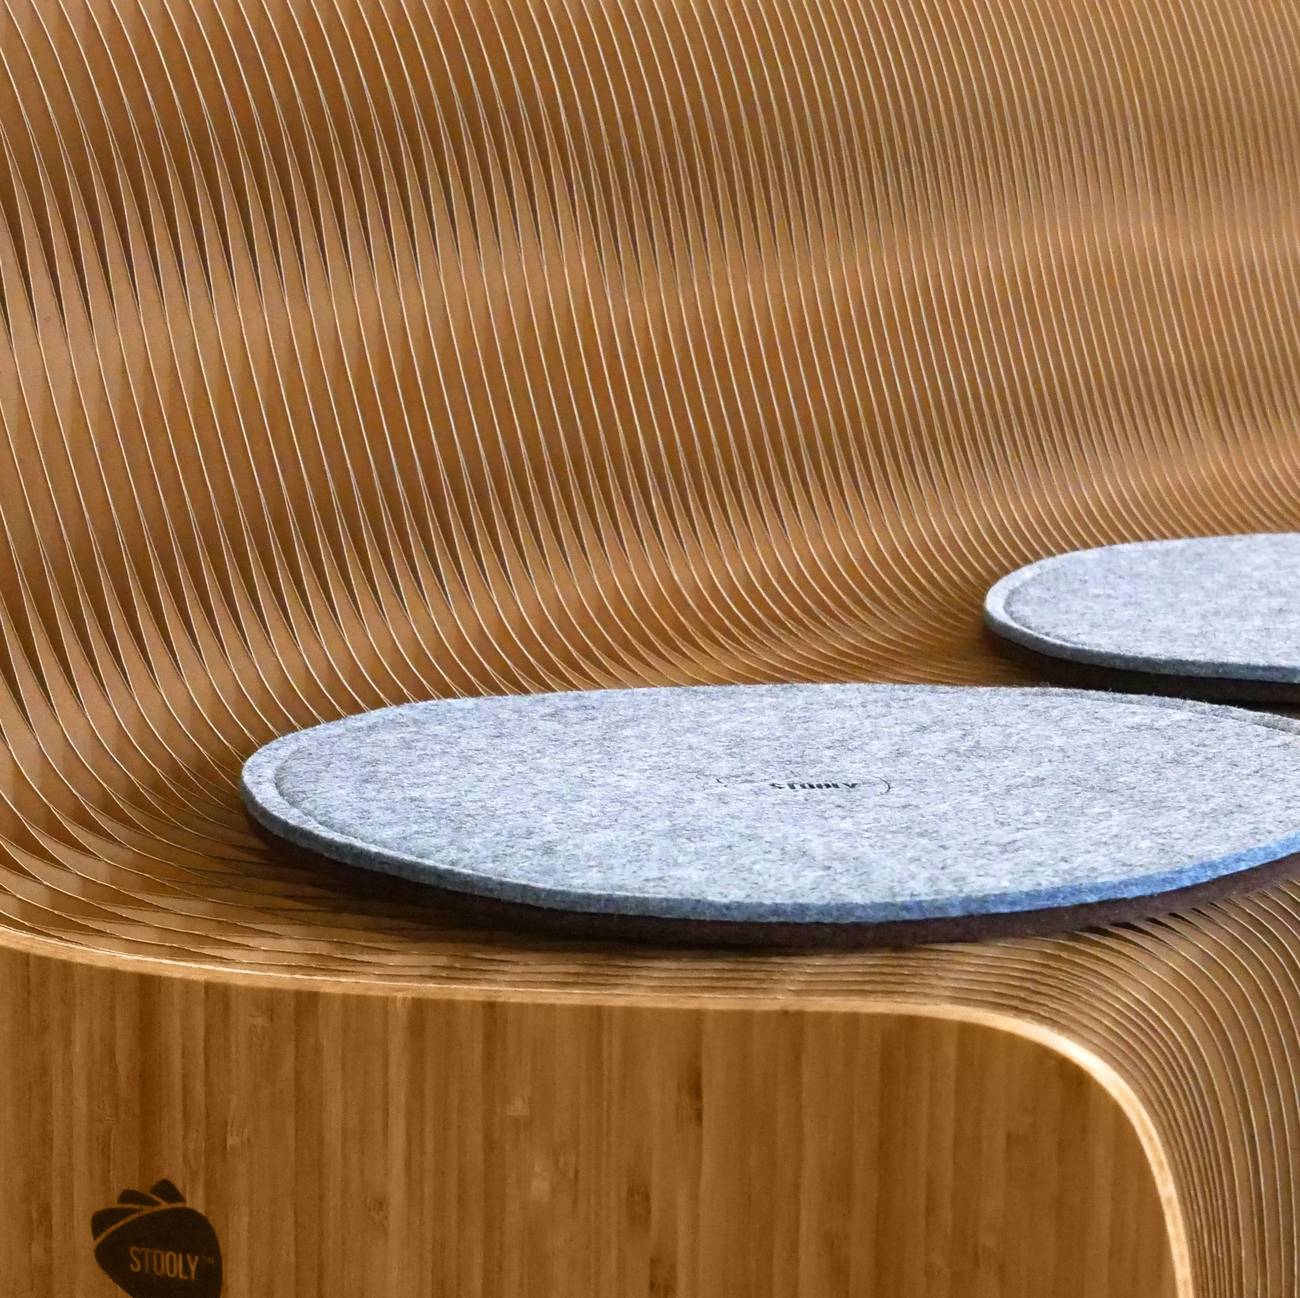 Galette en feutrine sur le sofa stooly flexible en carton alvéolé et finition en bamboo.